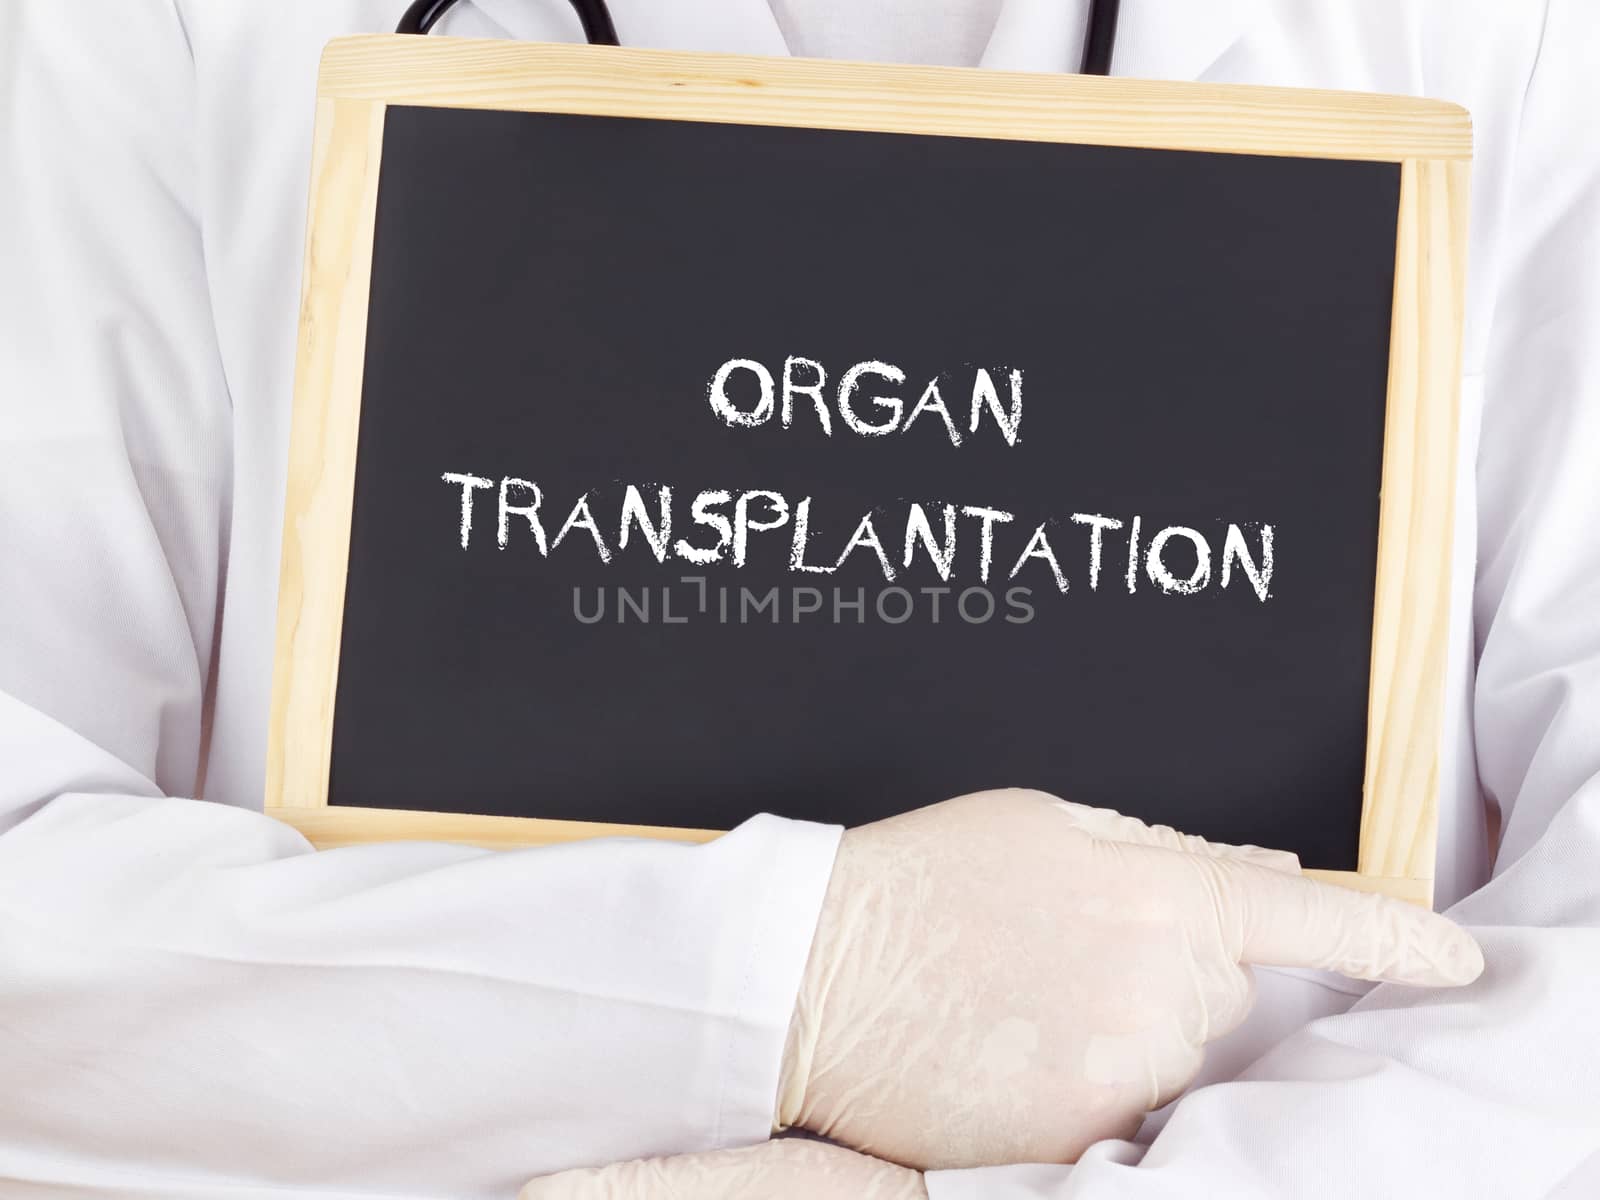 Doctor shows information: organ transplantation